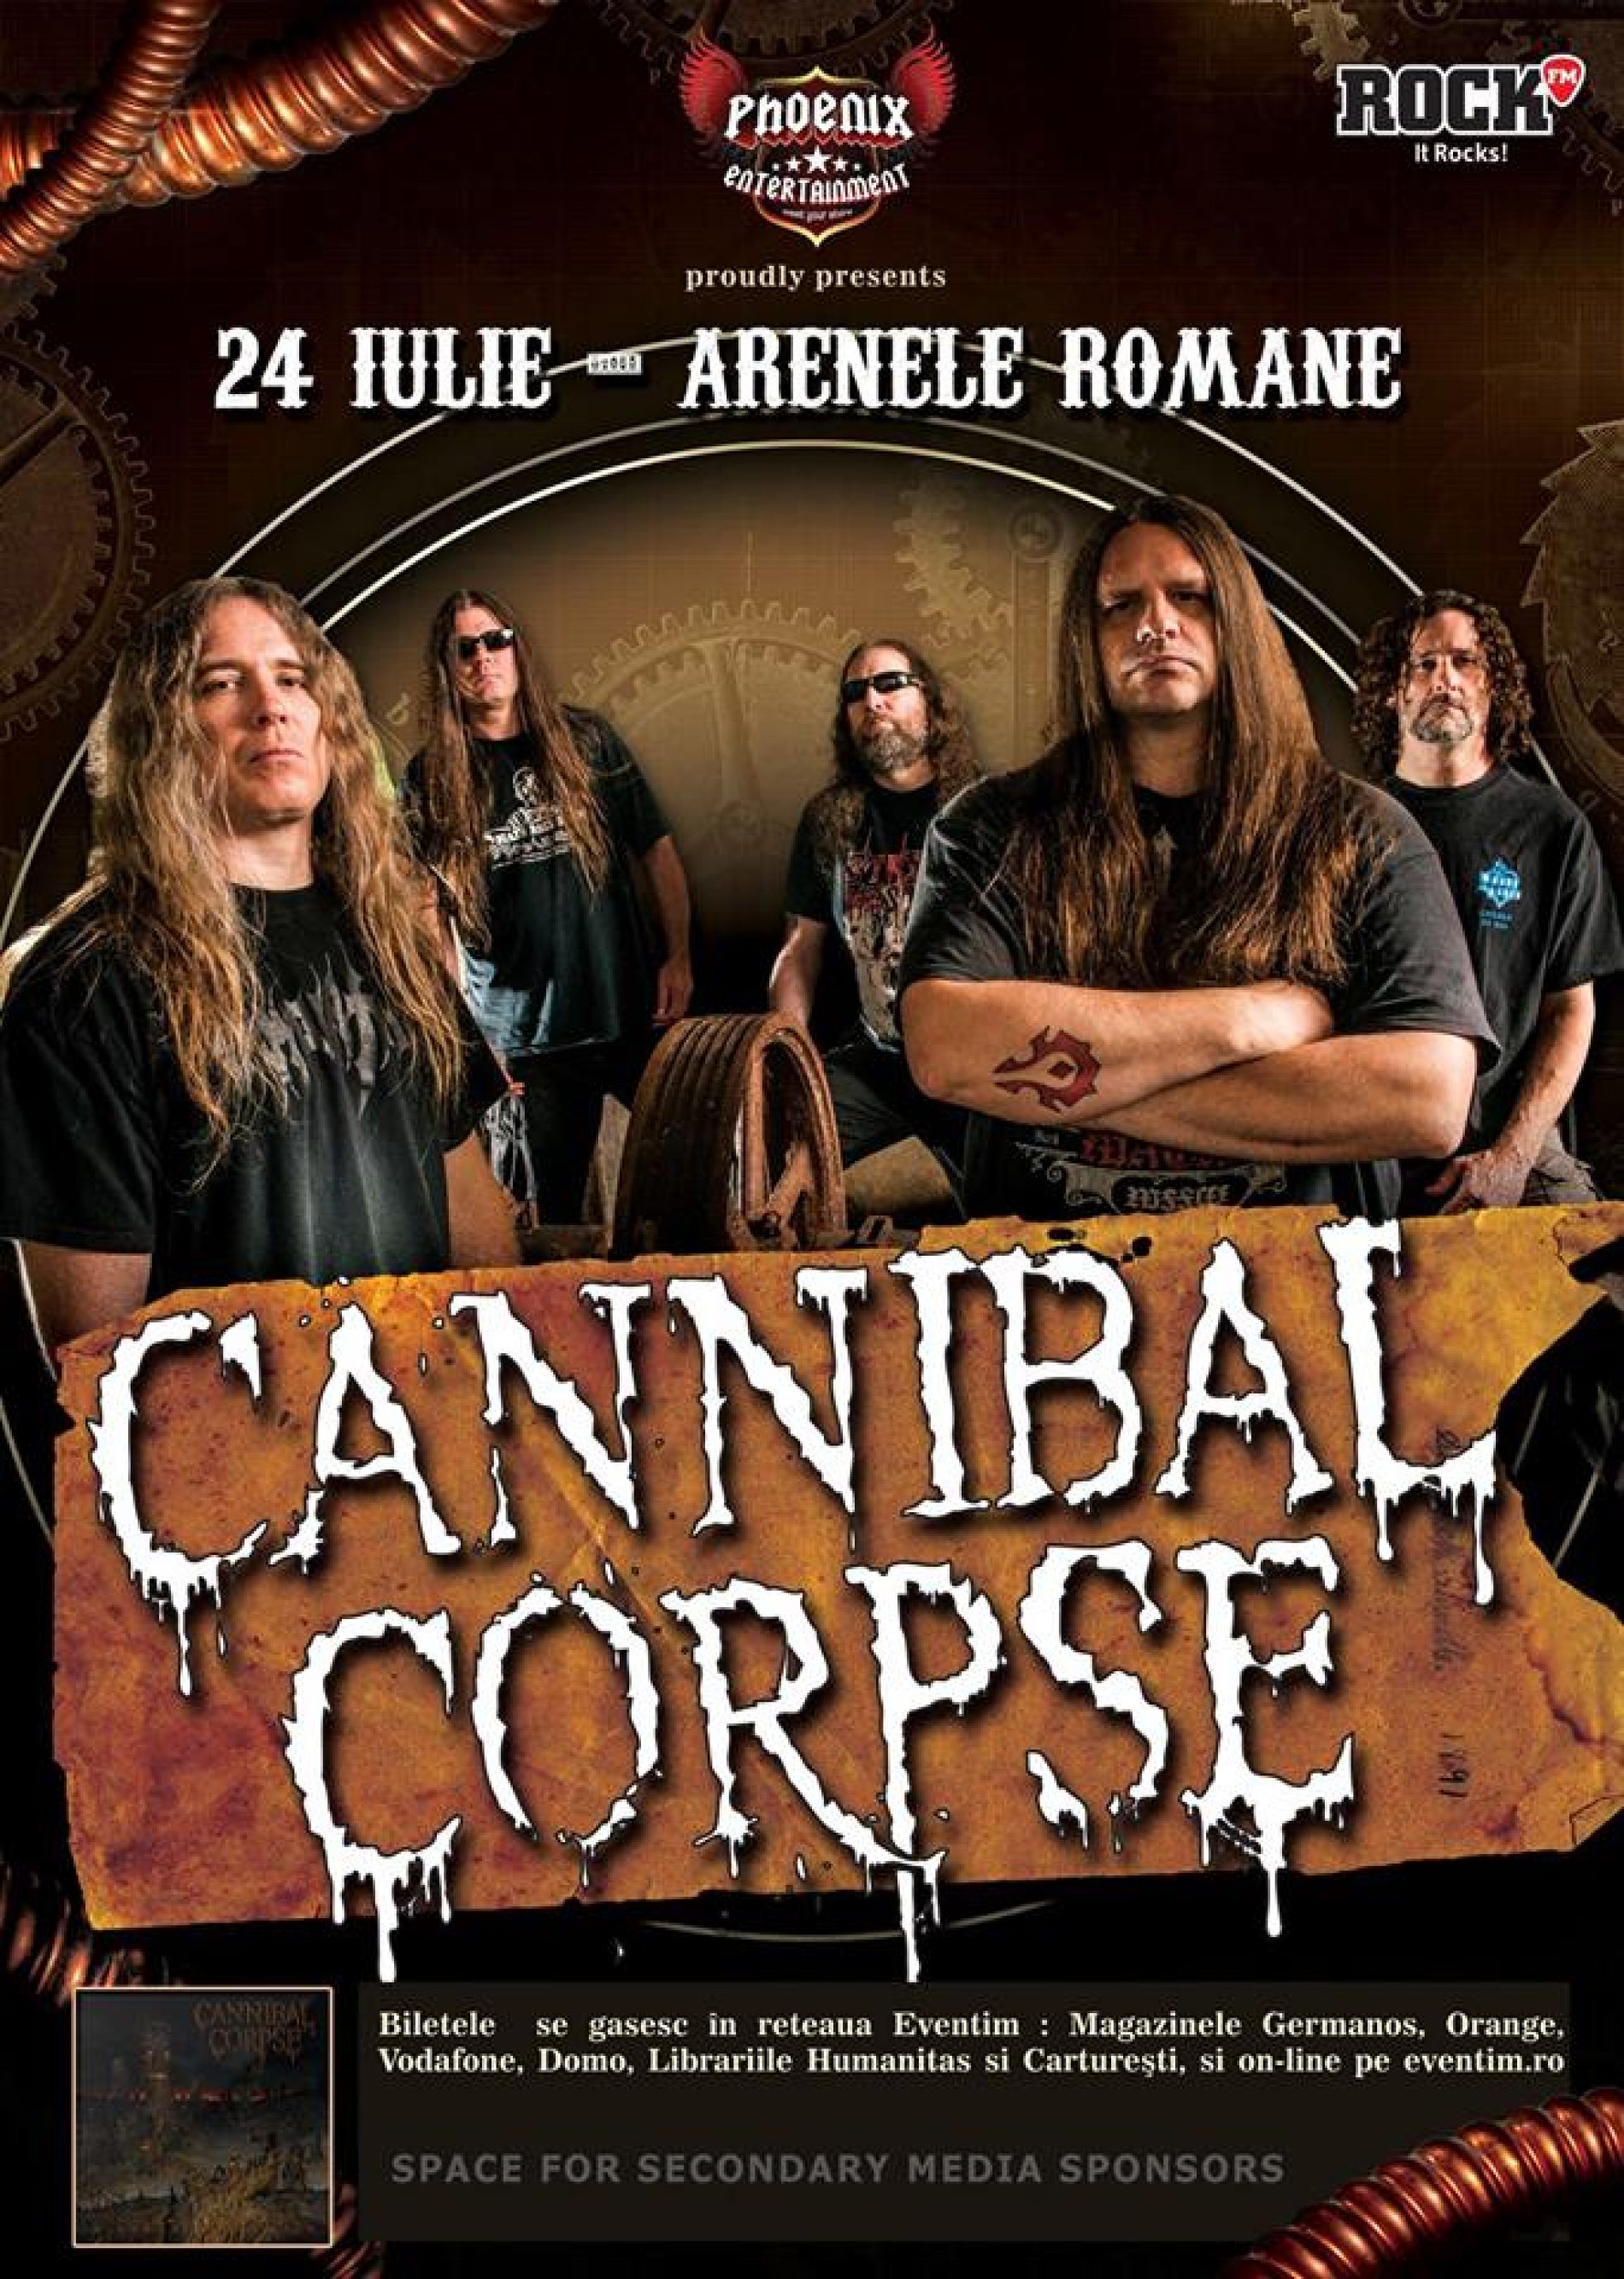 Cannibal Corpse vor canta la București